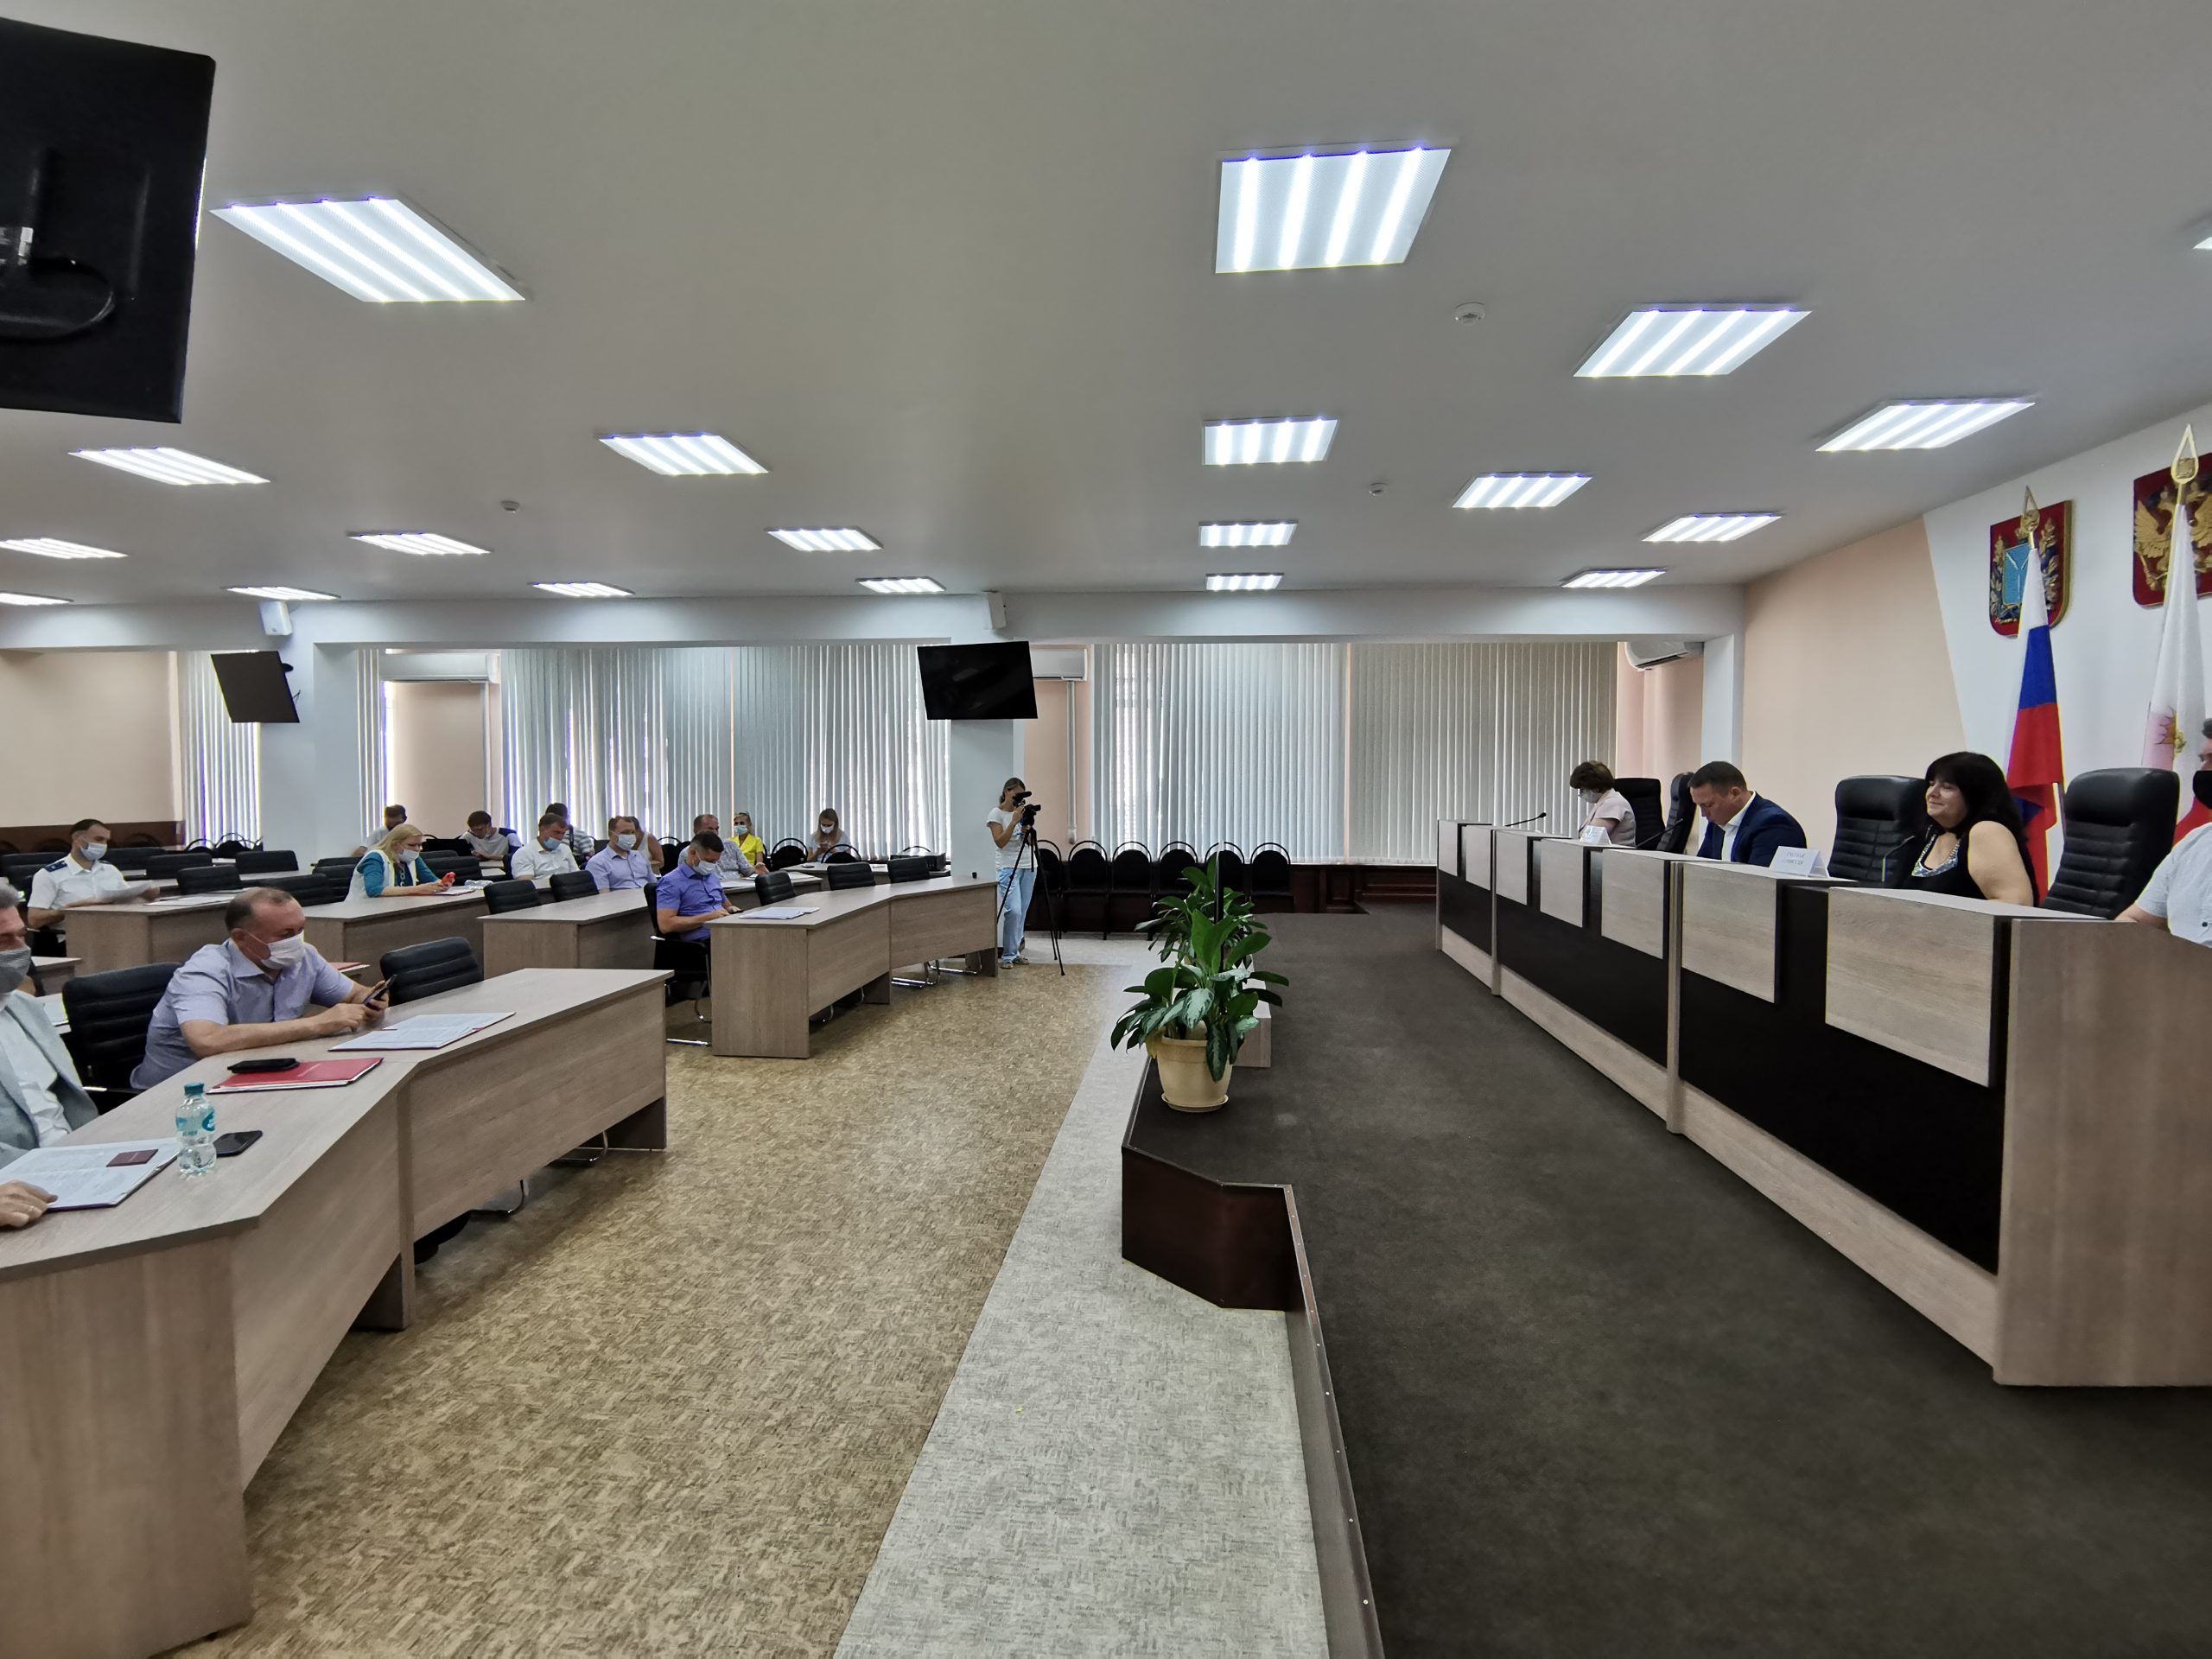 25 июня 2021 года состоялось заседание комитета и Совета МО город Балаково. Депутаты рассмотрели 7 вопросов: